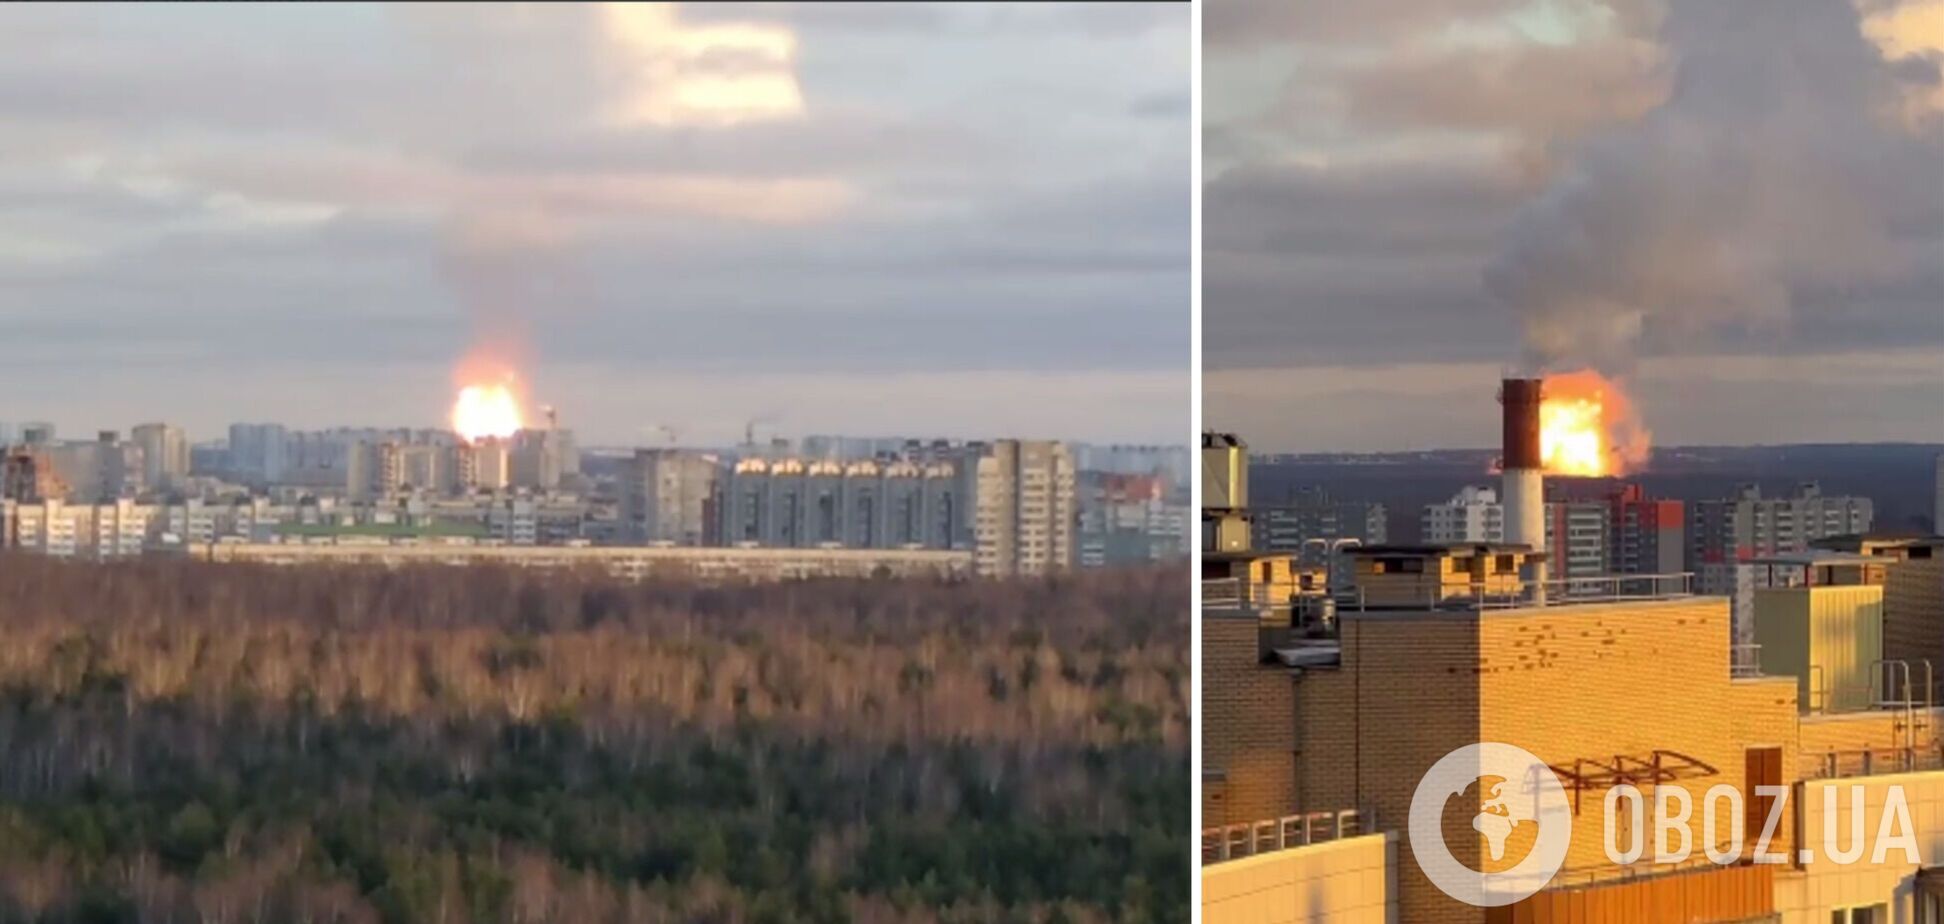 Под Санкт-Петербургом произошел мощный взрыв на газопроводе, поднялся столб огня. Видео